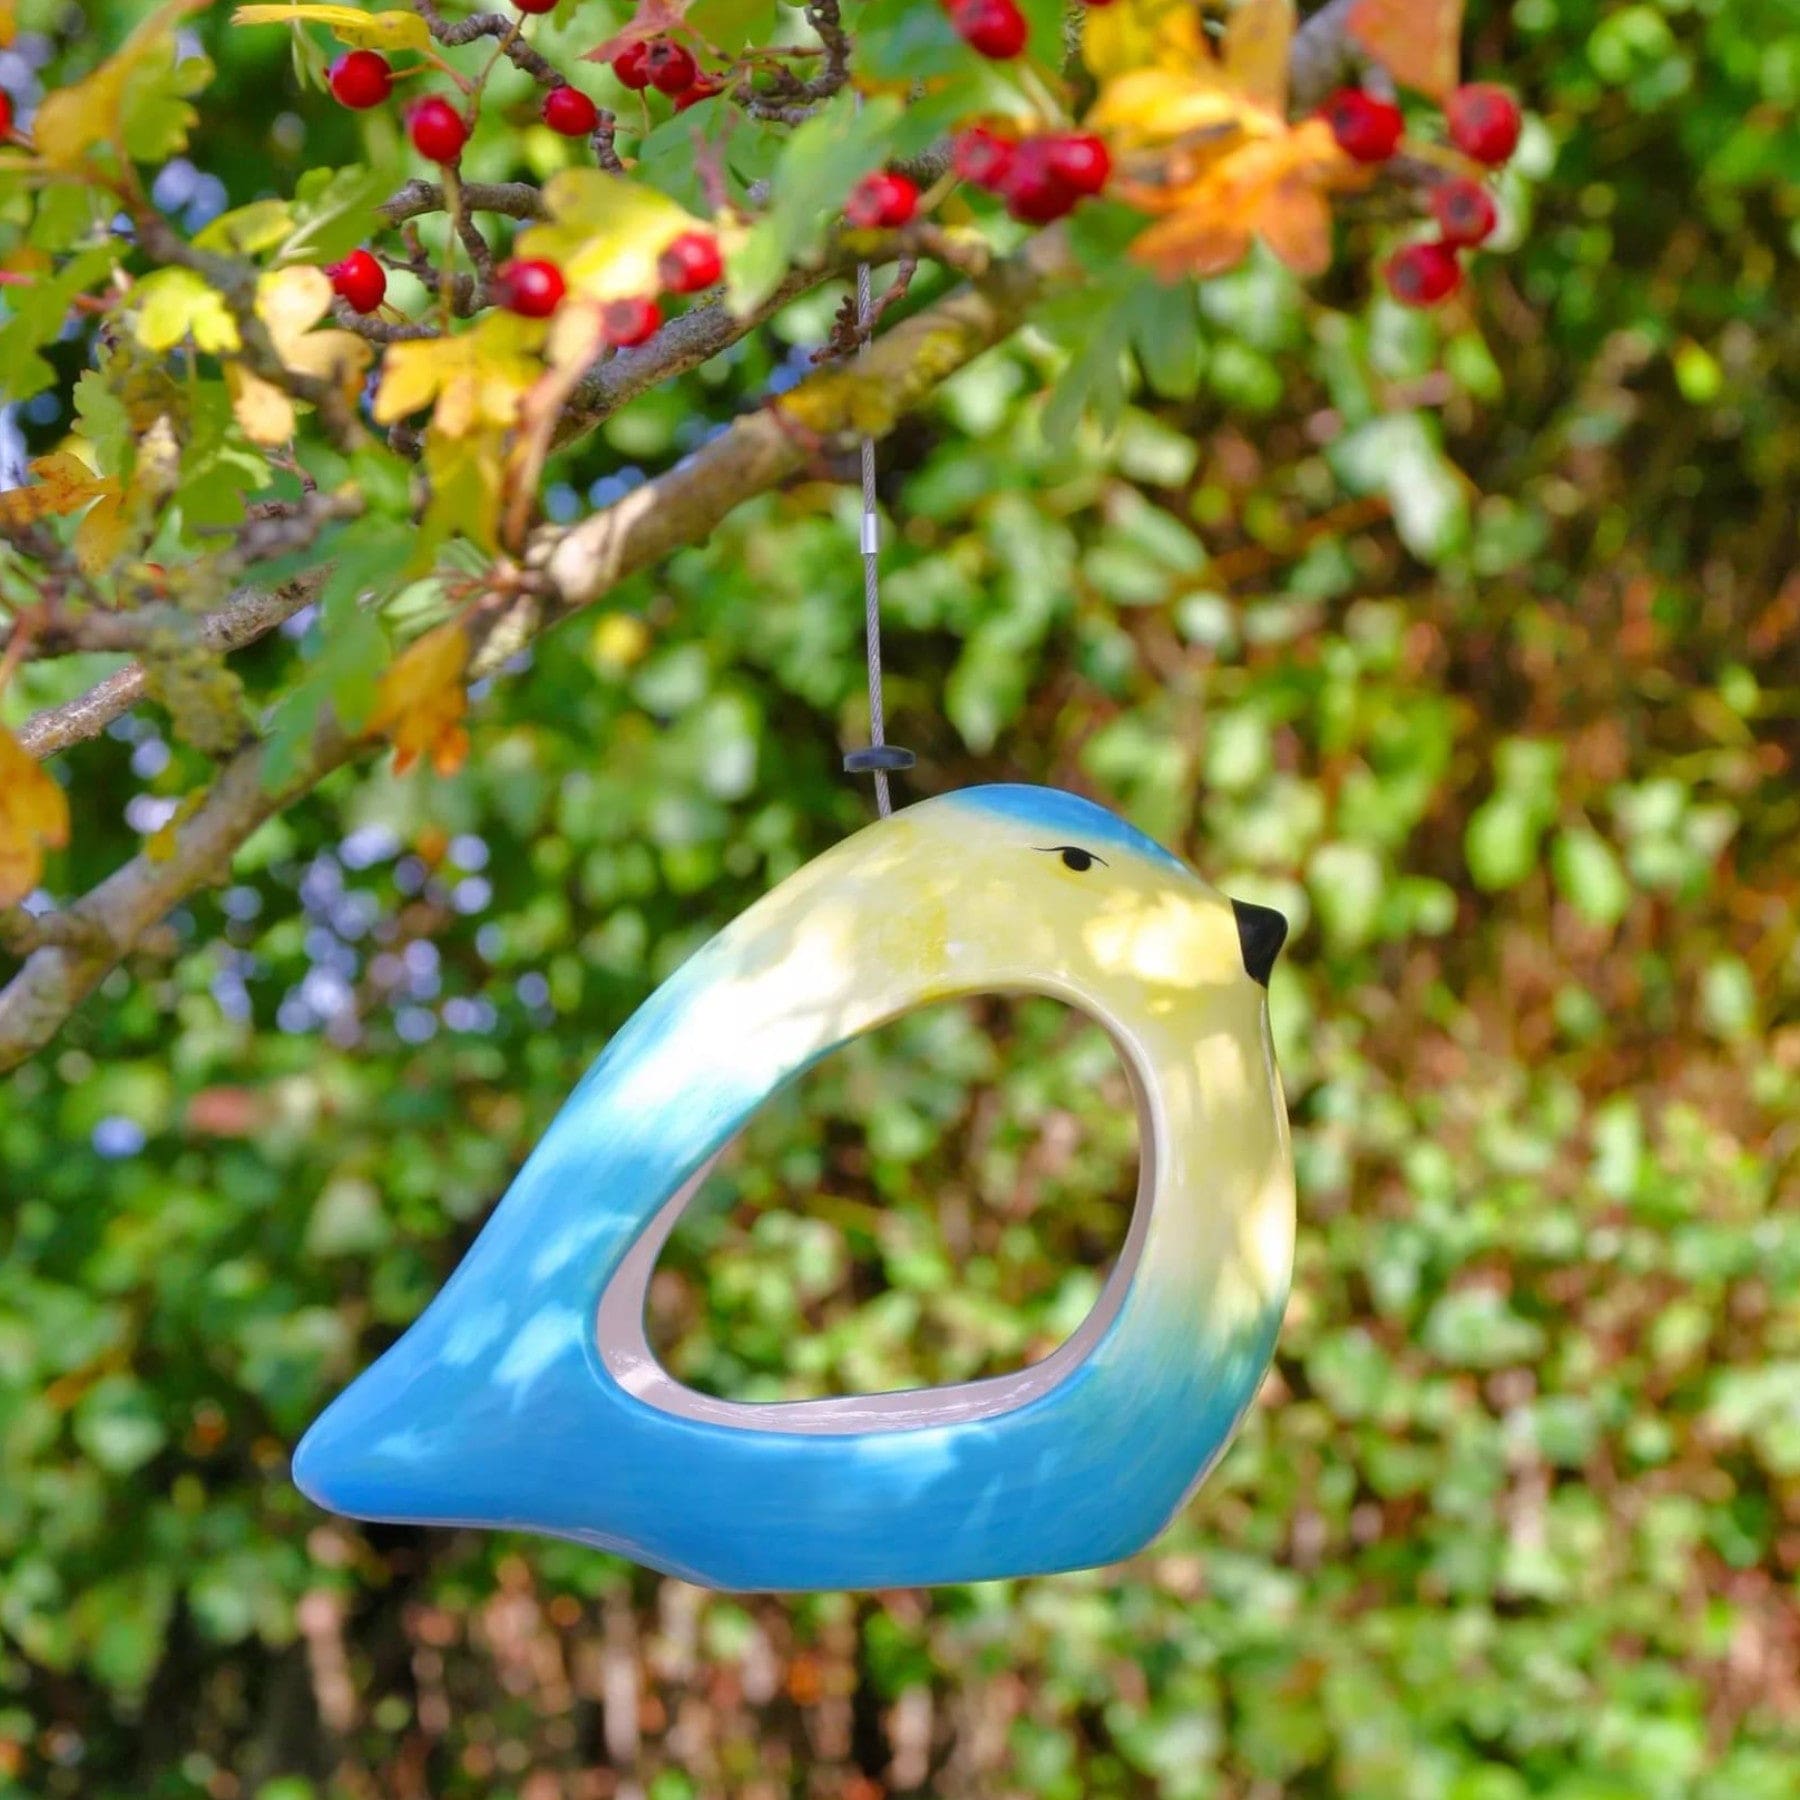 Ceramic blue tit bird feeder